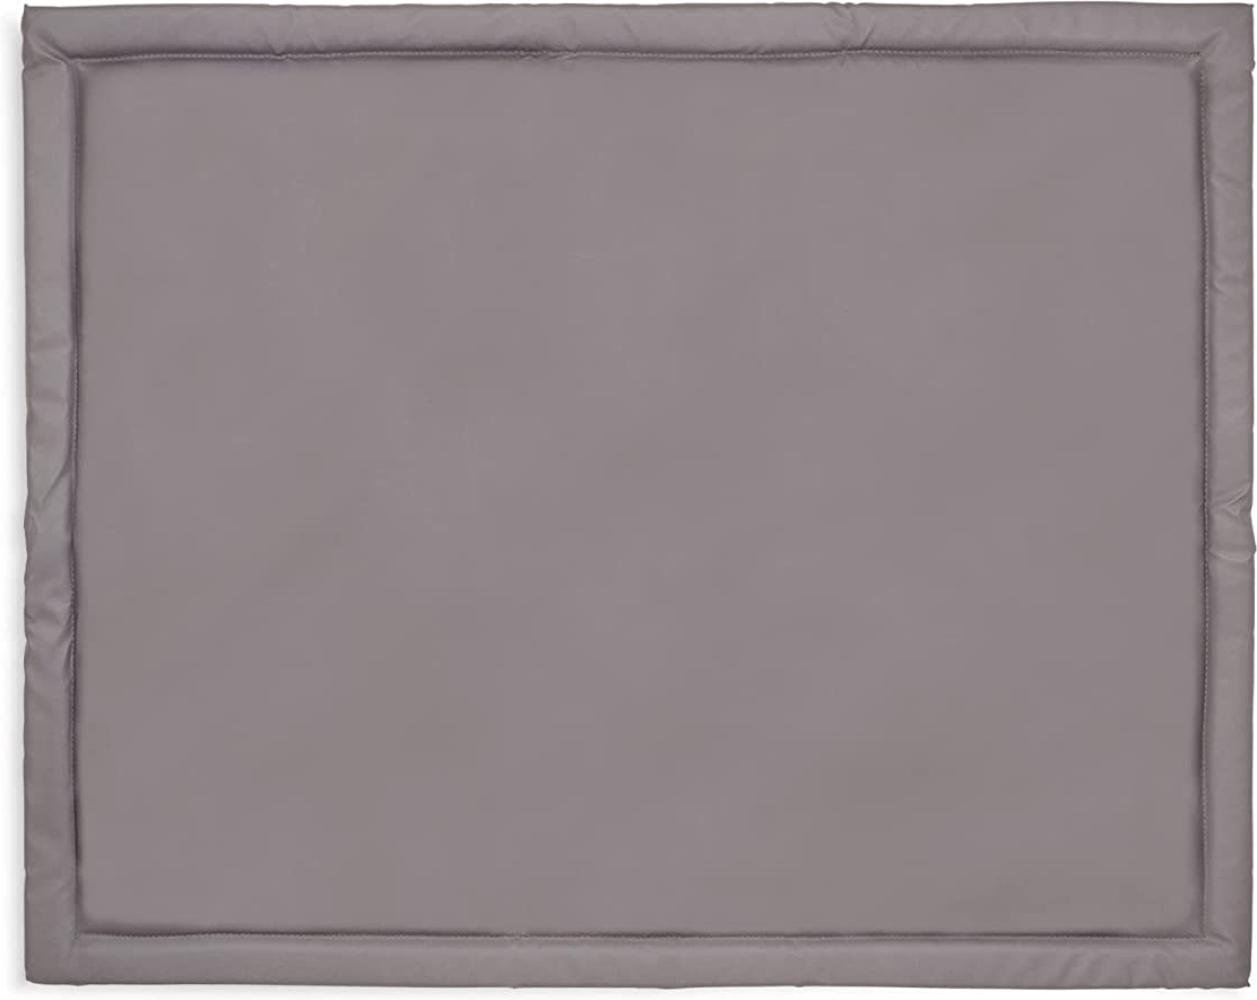 Jollein Laufstall-Deck Storm Grey 75 x 95 cm - Gra Bild 1